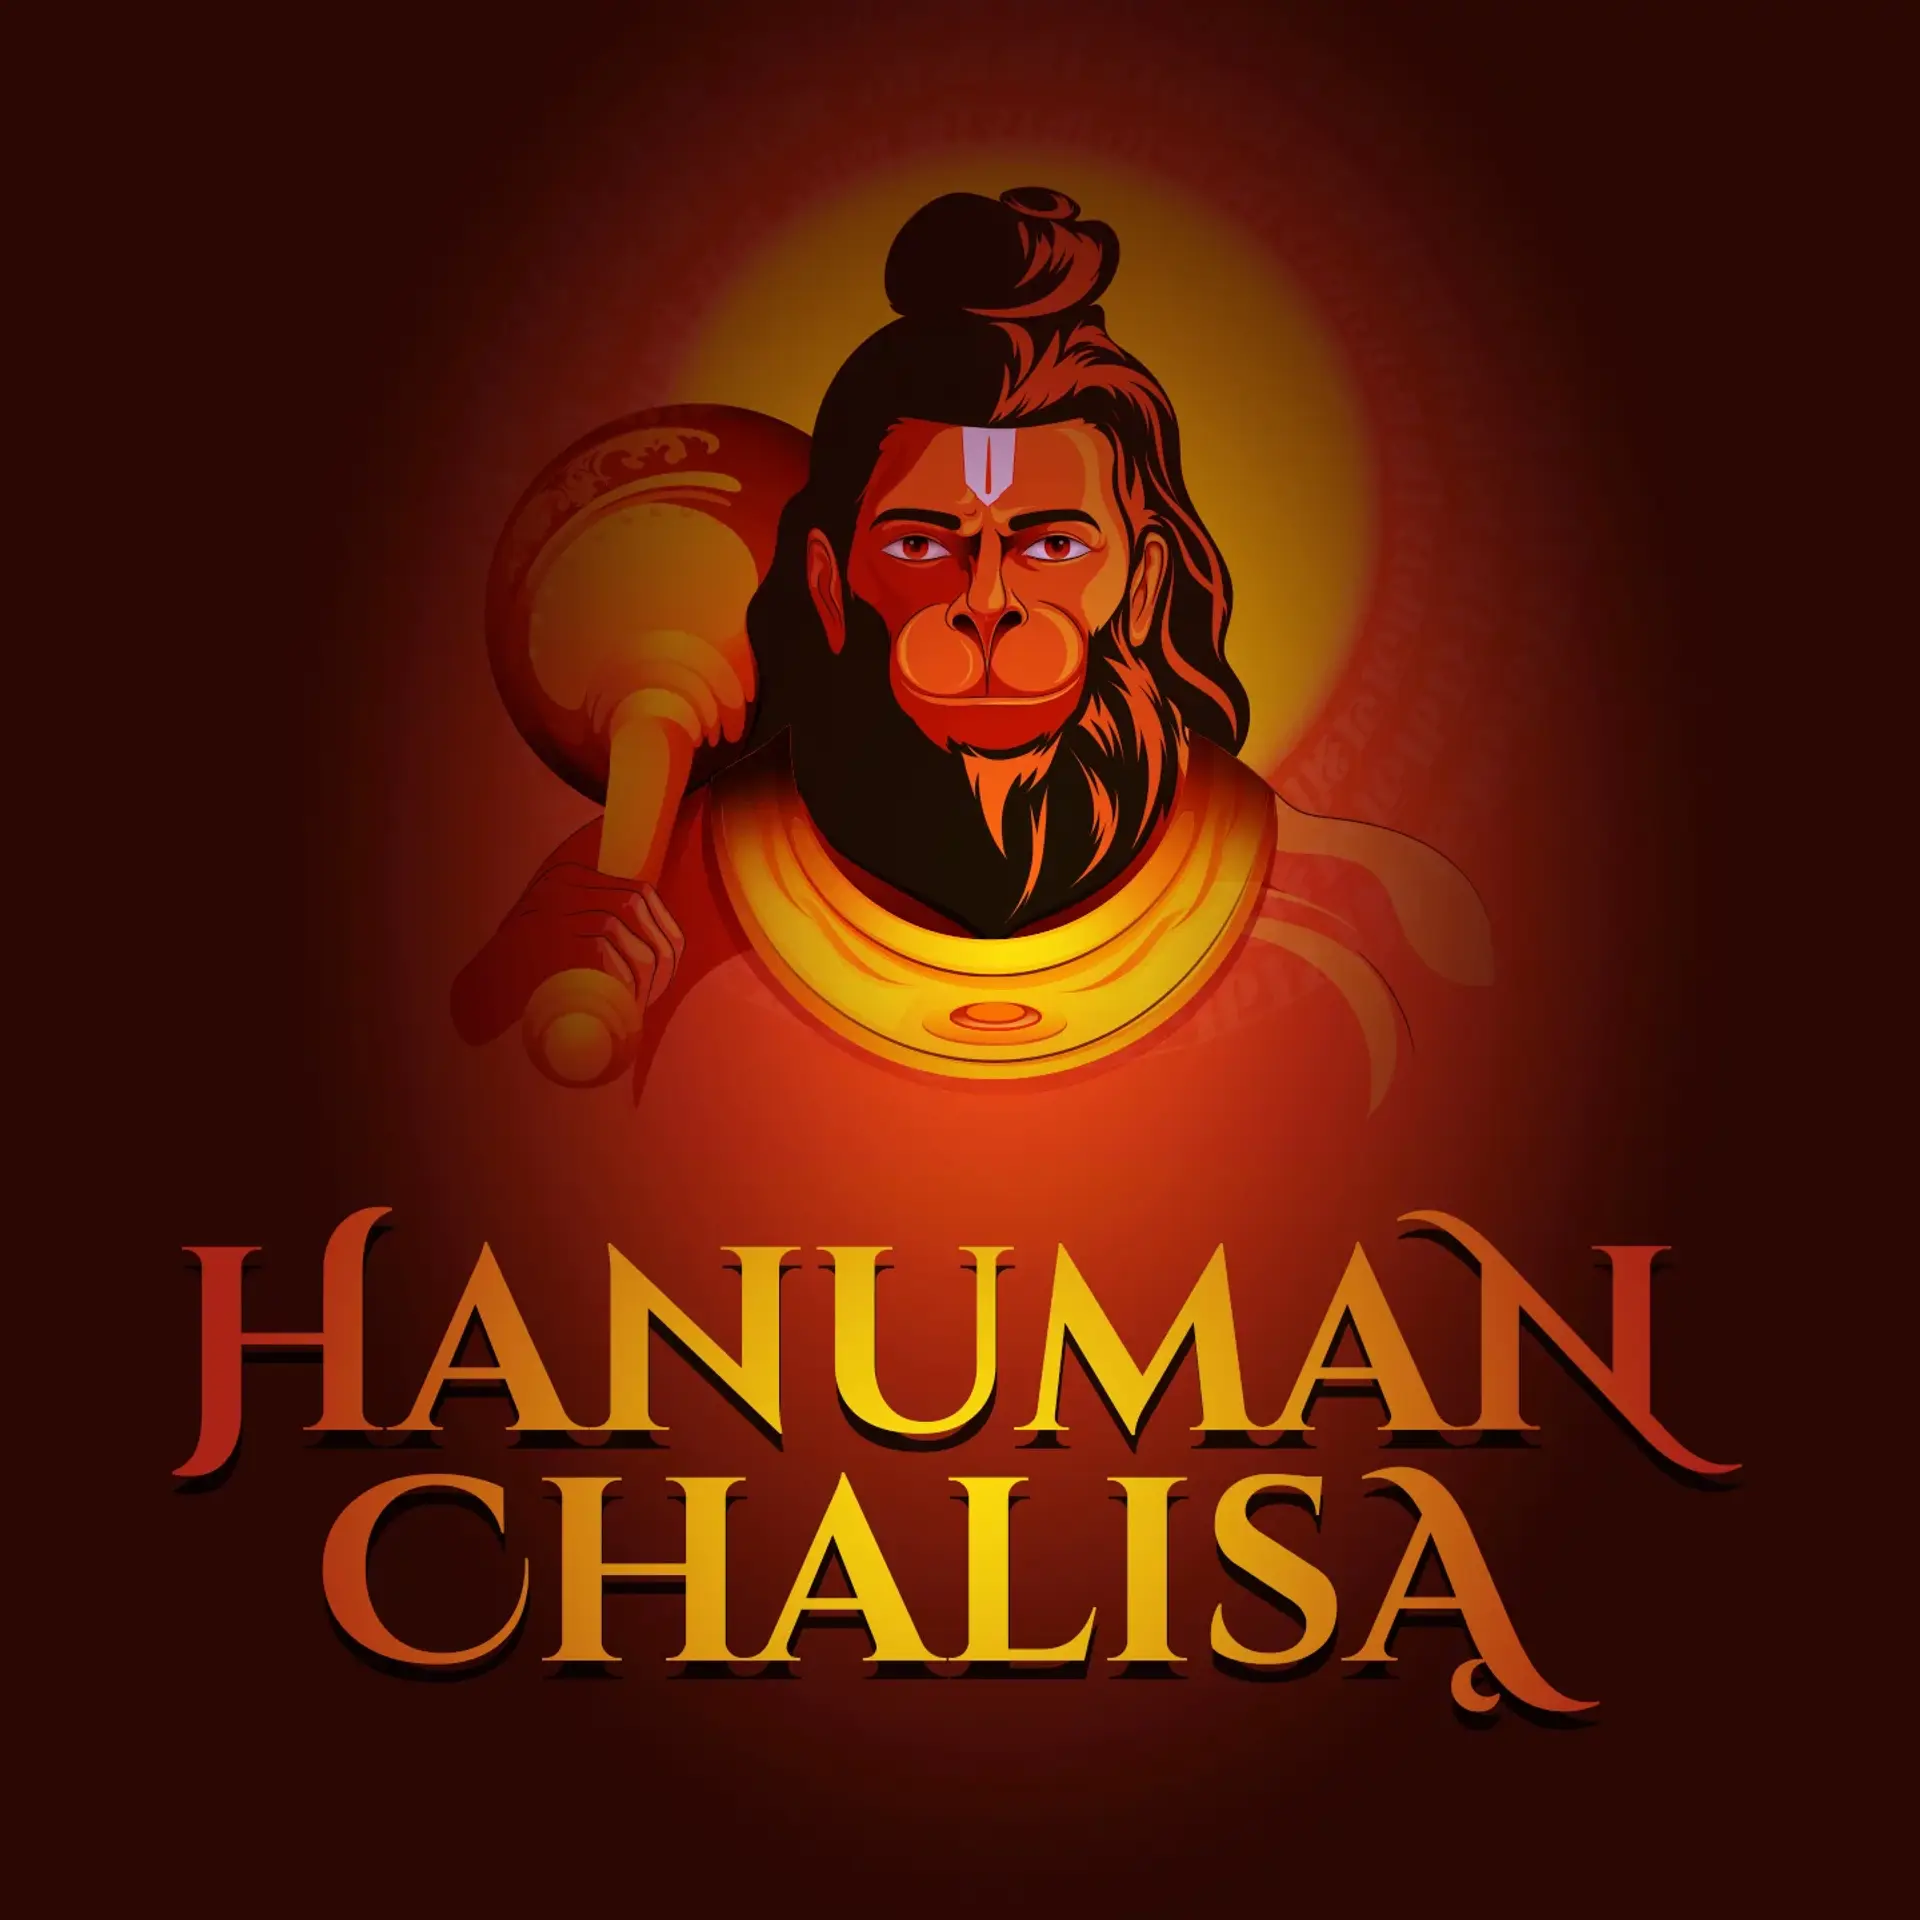 01. Hanuman Chalisa Ka Arth Samajhiye | 